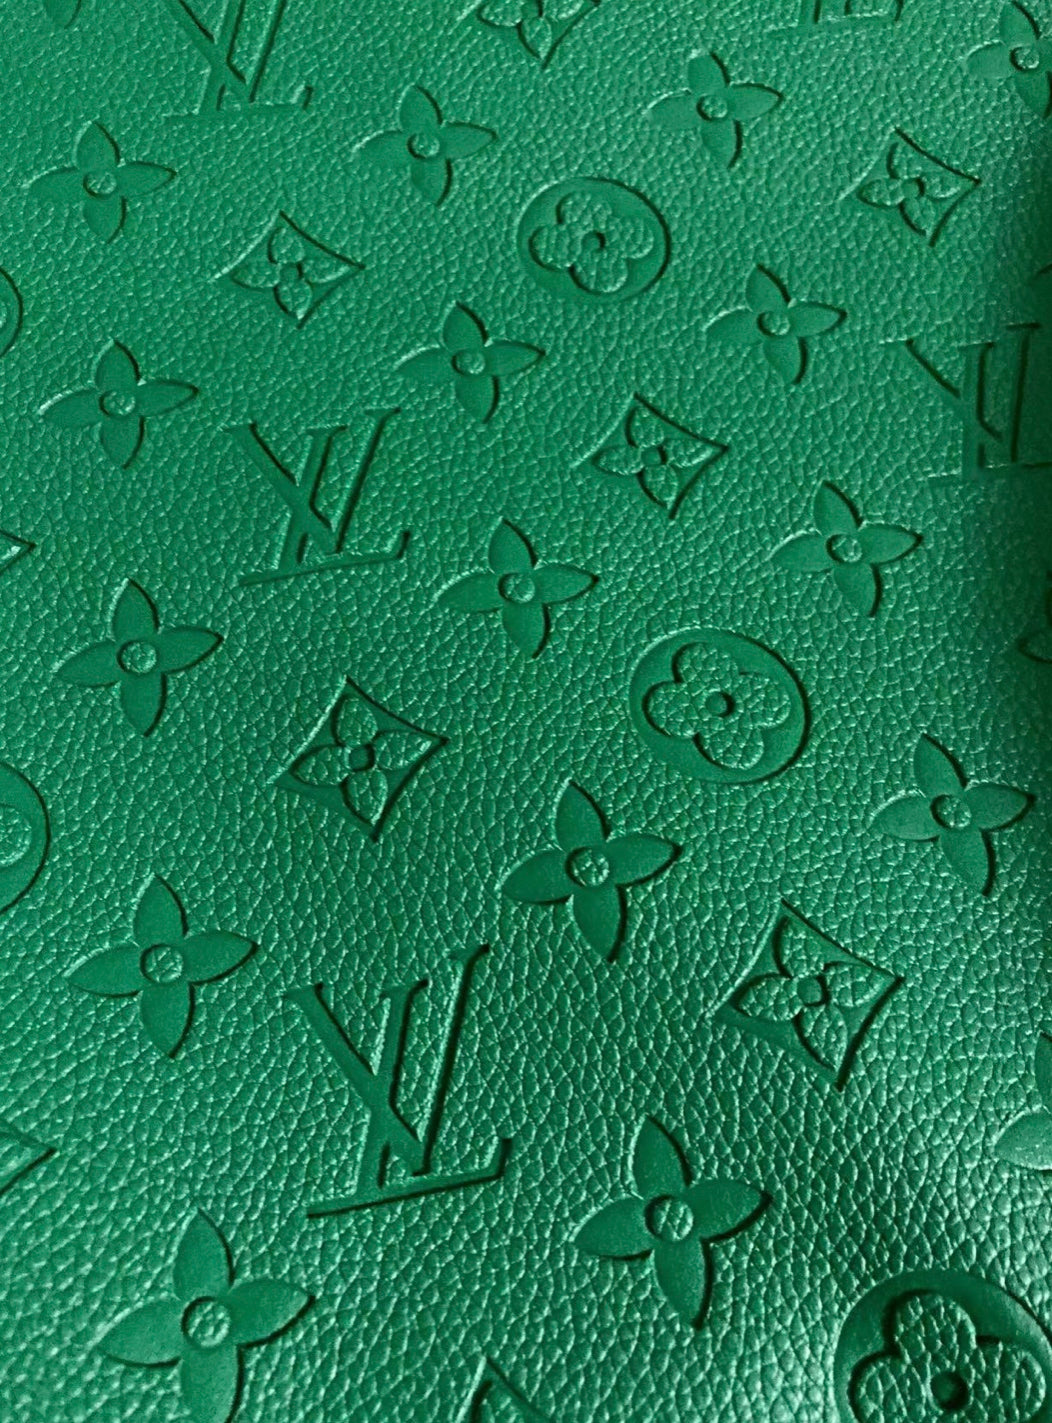 Handmade Malachite Green Soft Embossed LV Vinyl Leather for Custom Sewing Upholstery